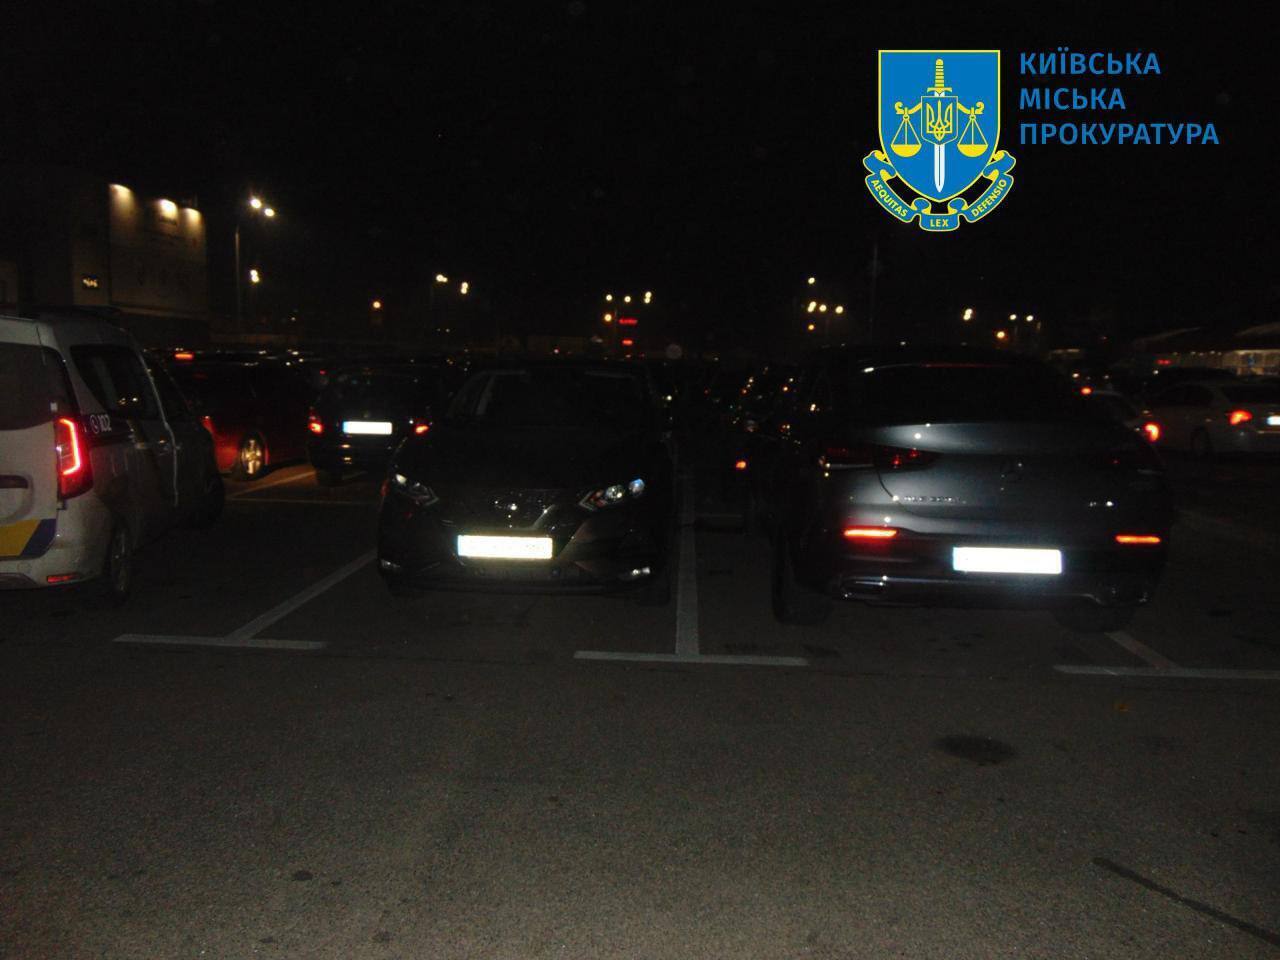 В Киеве двое мужчин избили владельца и пытались угнать авто с парковки, чтобы продать и убежать за границу